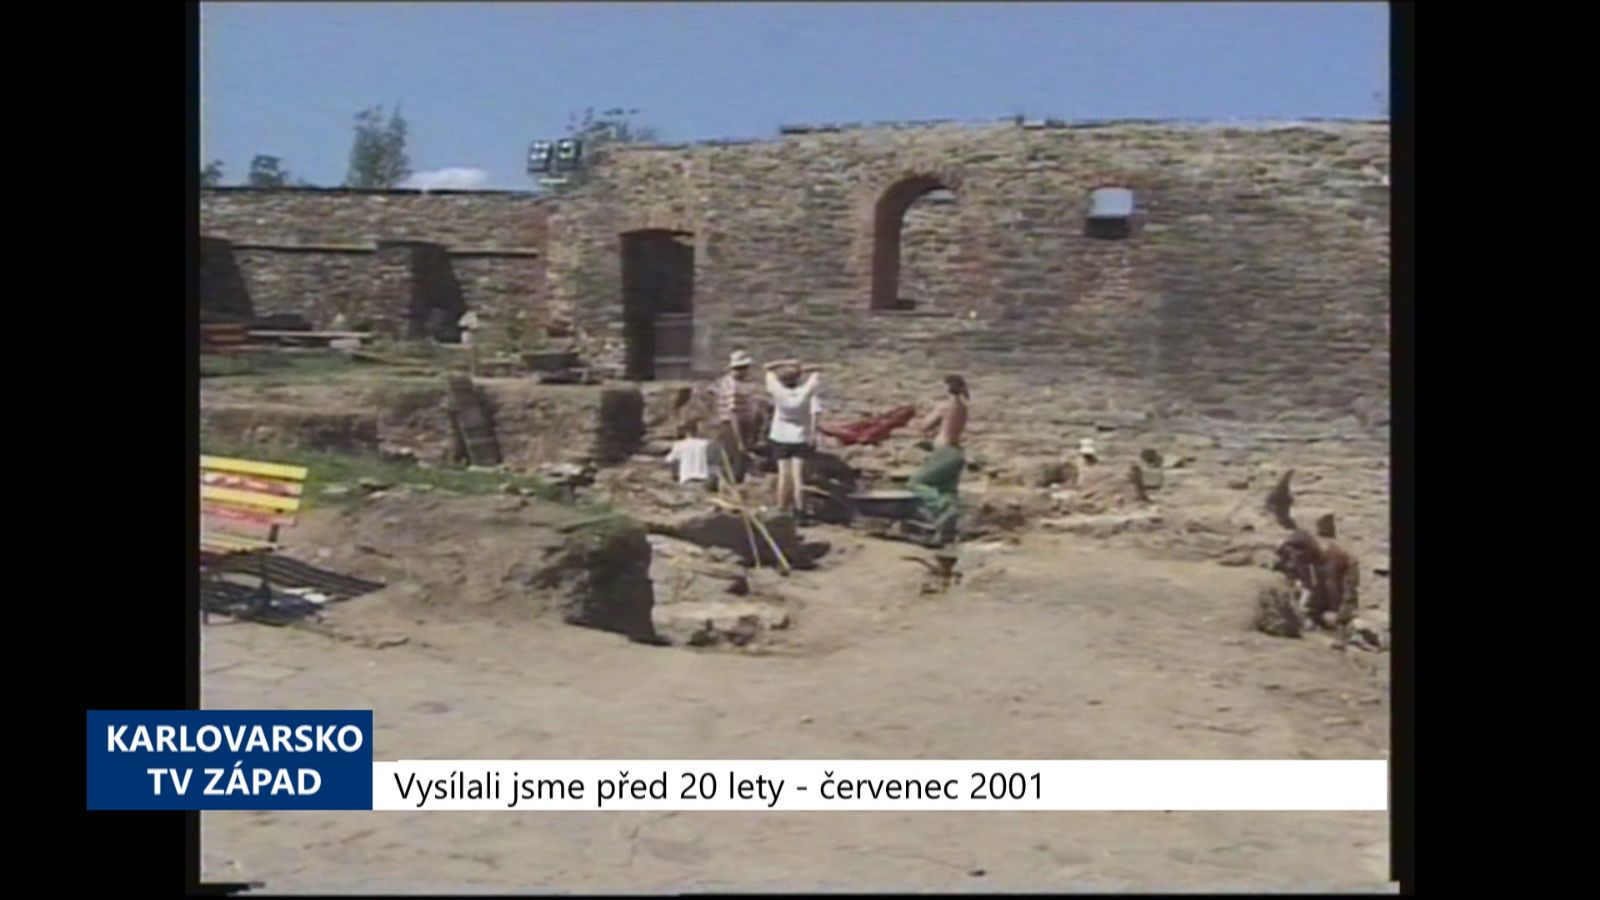 2001 – Cheb: Město chce zapsat hrad na seznam UNESCO (TV Západ)